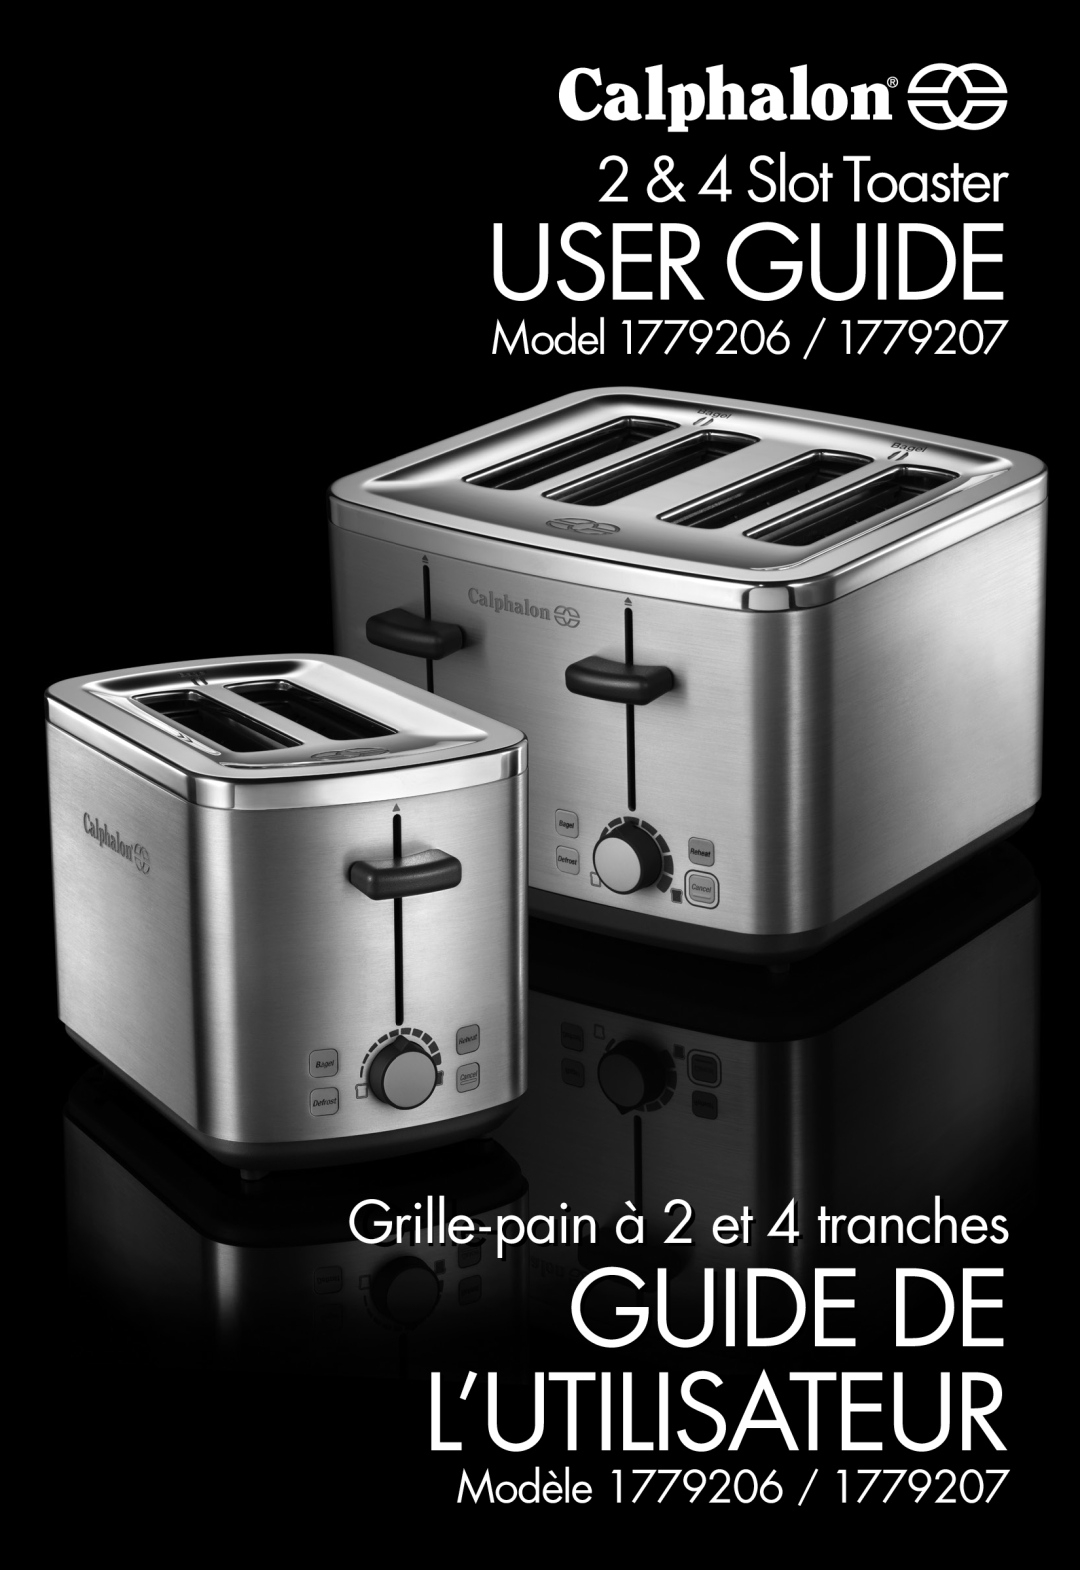 Calphalon 1779206 manual User Guide, Guide De L’Utilisateur, 2 & 4 Slot Toaster, Model, Grillri ele--painà 2 et 4 tranches 